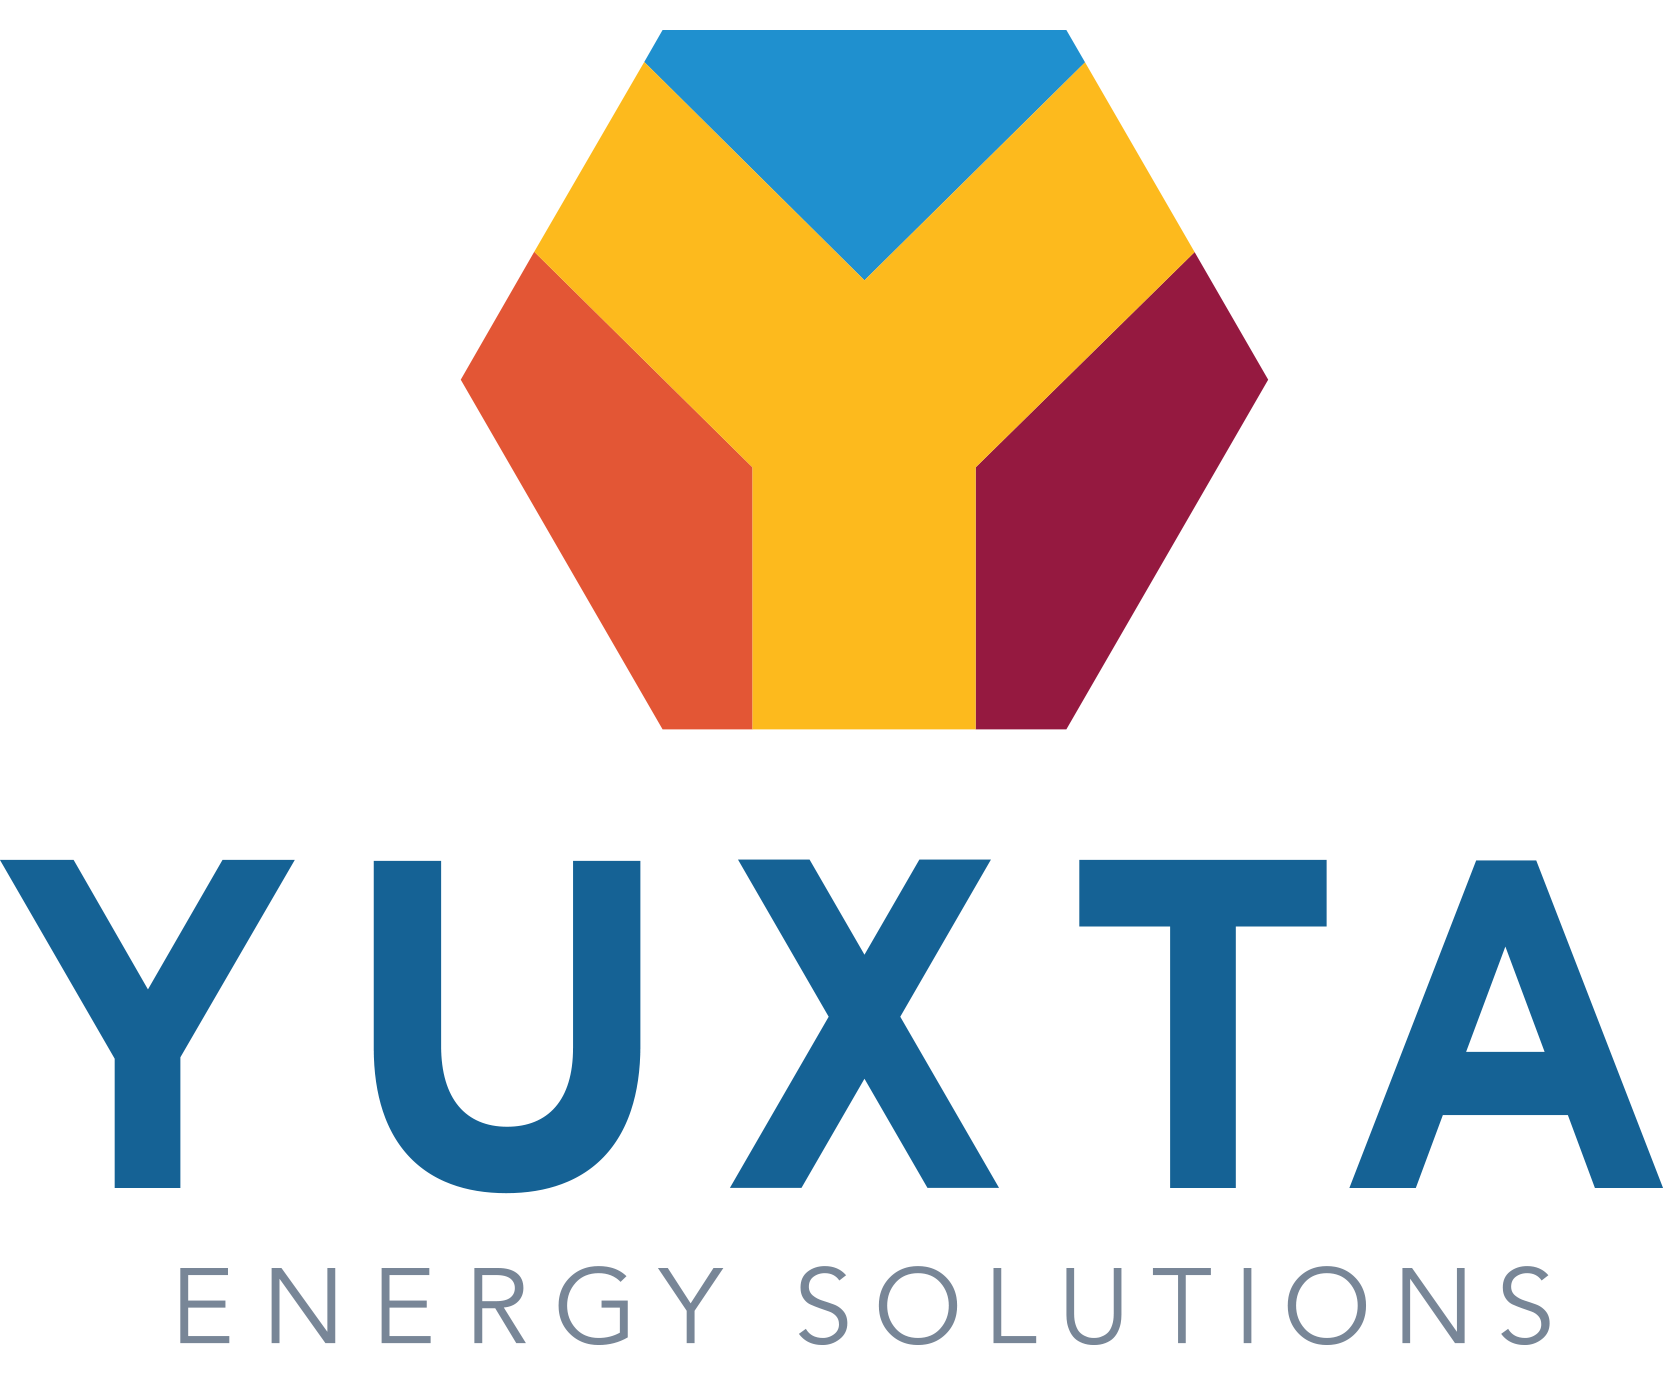 YUXTA Energy